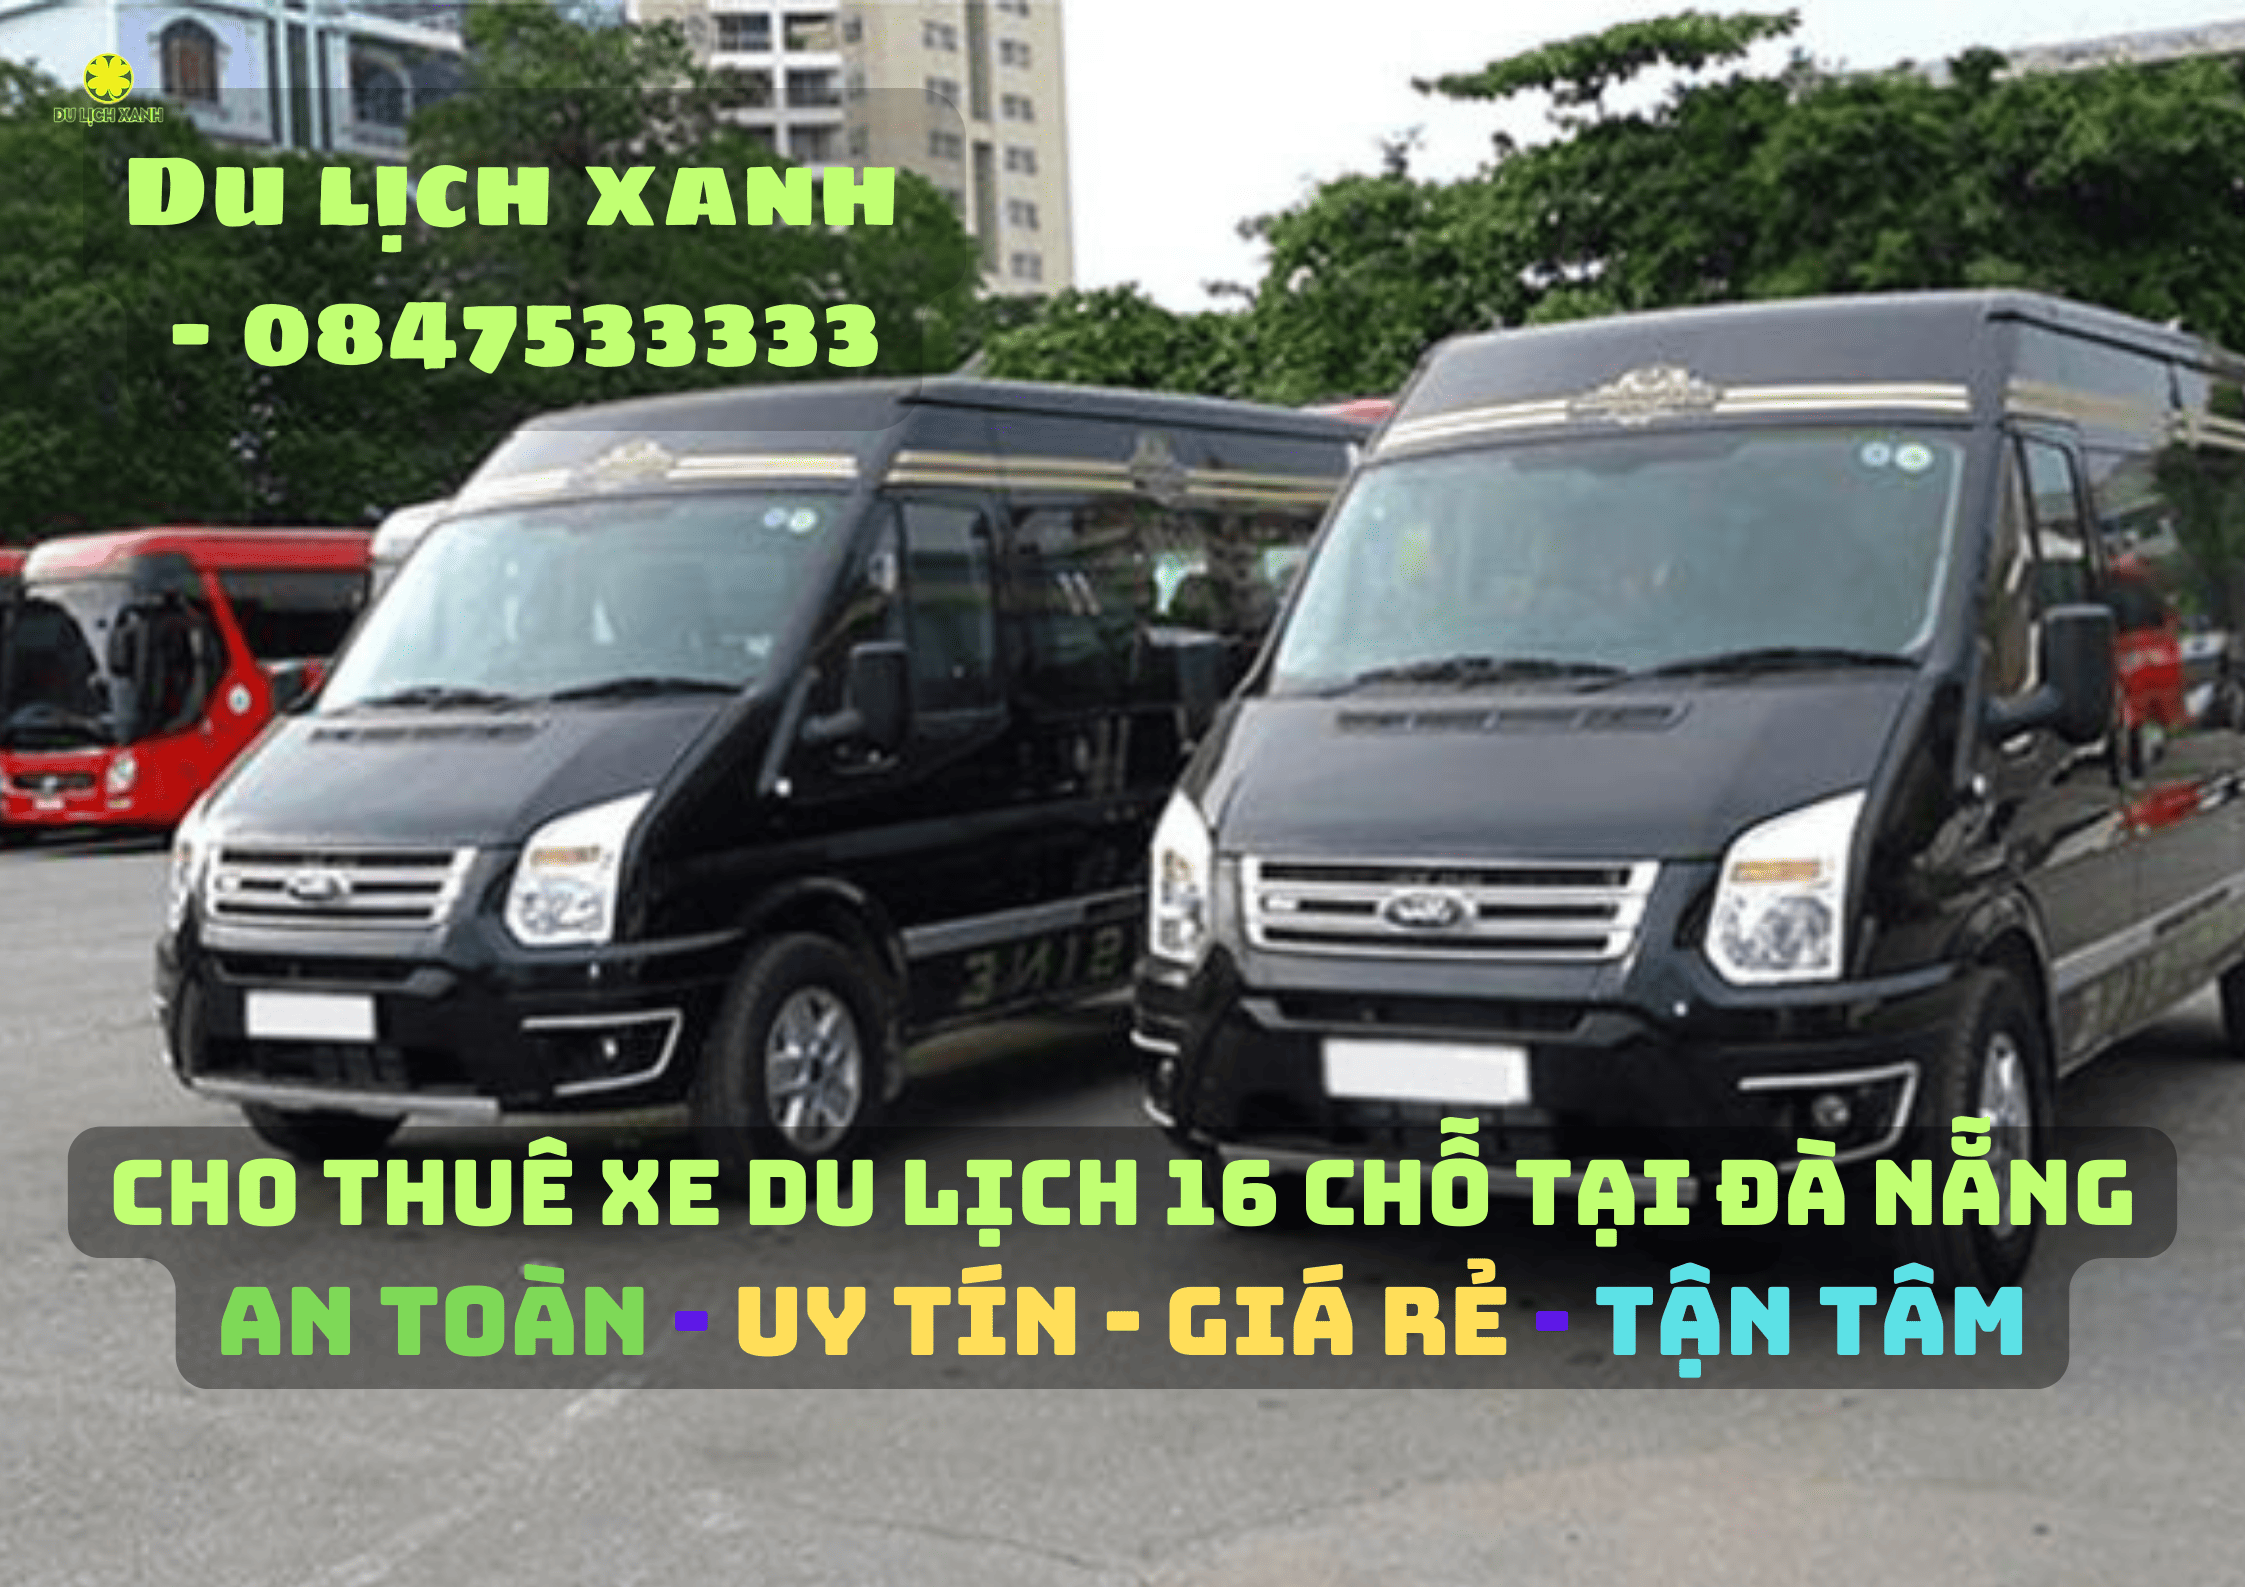 Dịch vụ cho thuê xe du lịch 16 chỗ tại Đà Nẵng